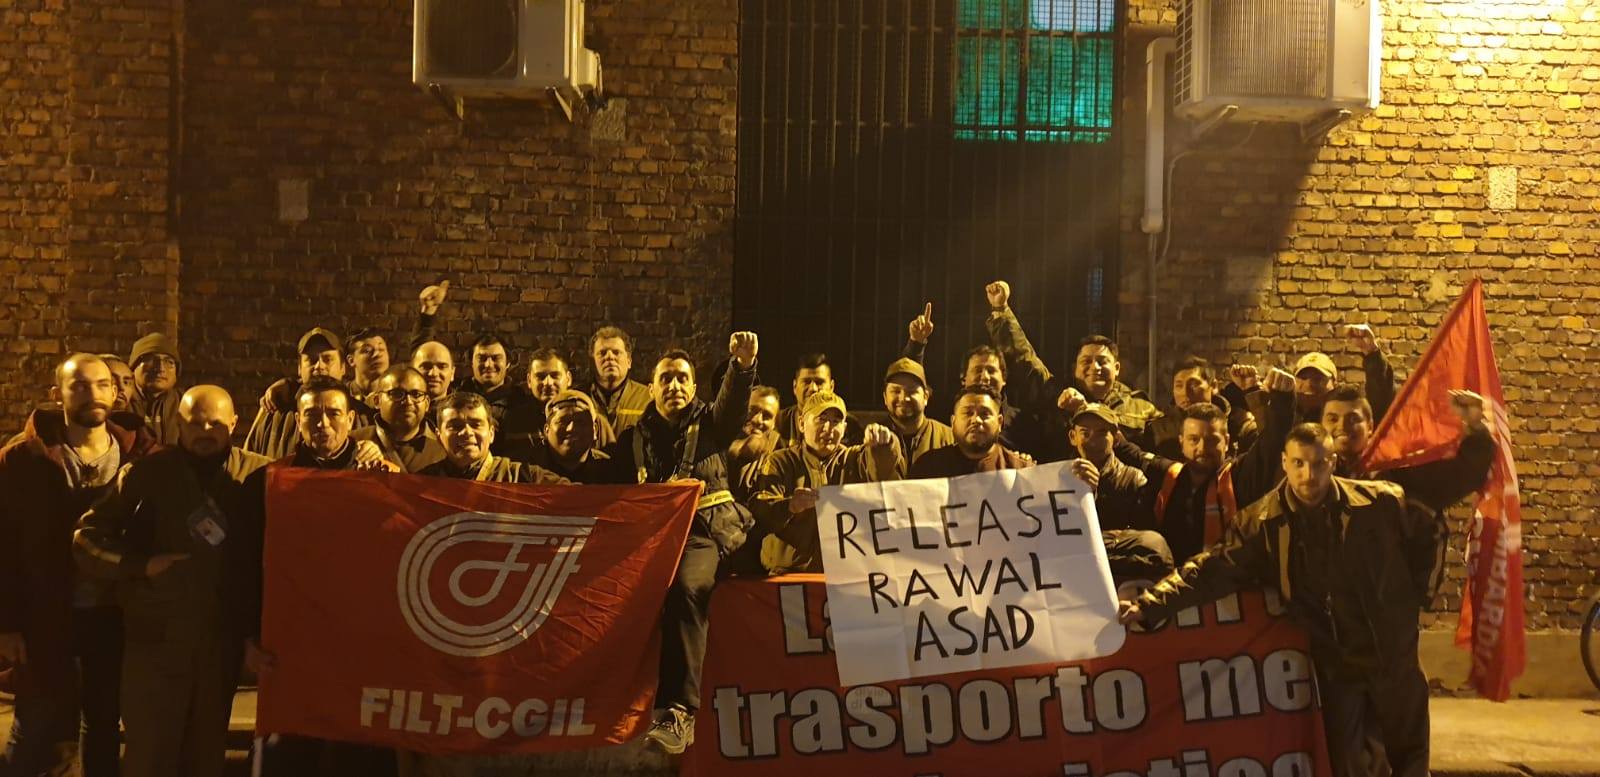 Free Rawal FILT CGIL Italian Transport Workers Federation Milan